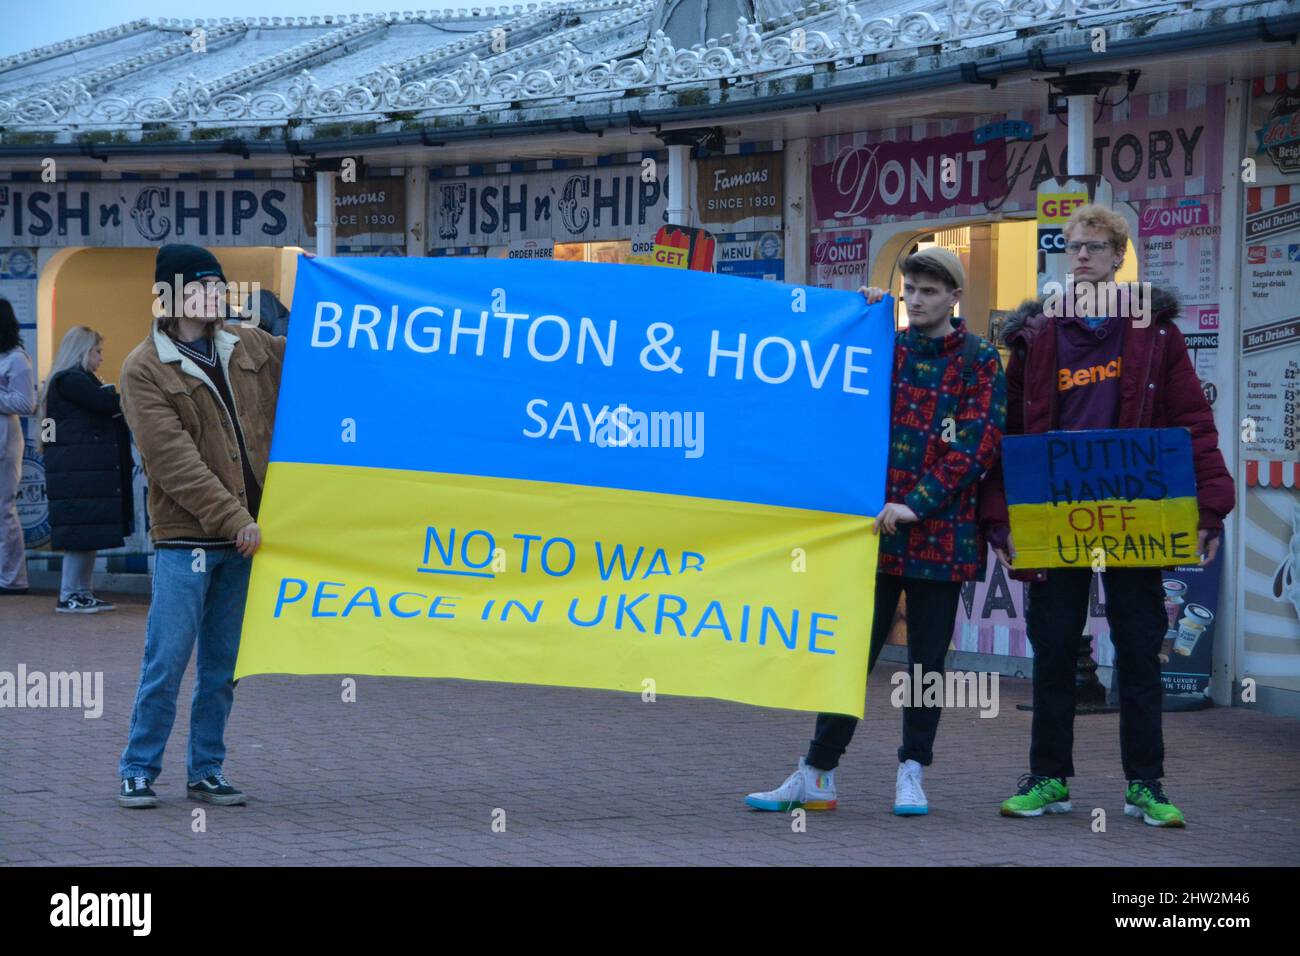 03. März 2022. Dutzende von Menschen wenden sich heute Abend in Brighton an, um Unterstützung für die Ukraine zu zeigen.Sussex the Gathering tok place a the Palace Pier in Brighton on the Seafront at 17:30 Credit: @Dmoonuk/Alamy Live News Stockfoto